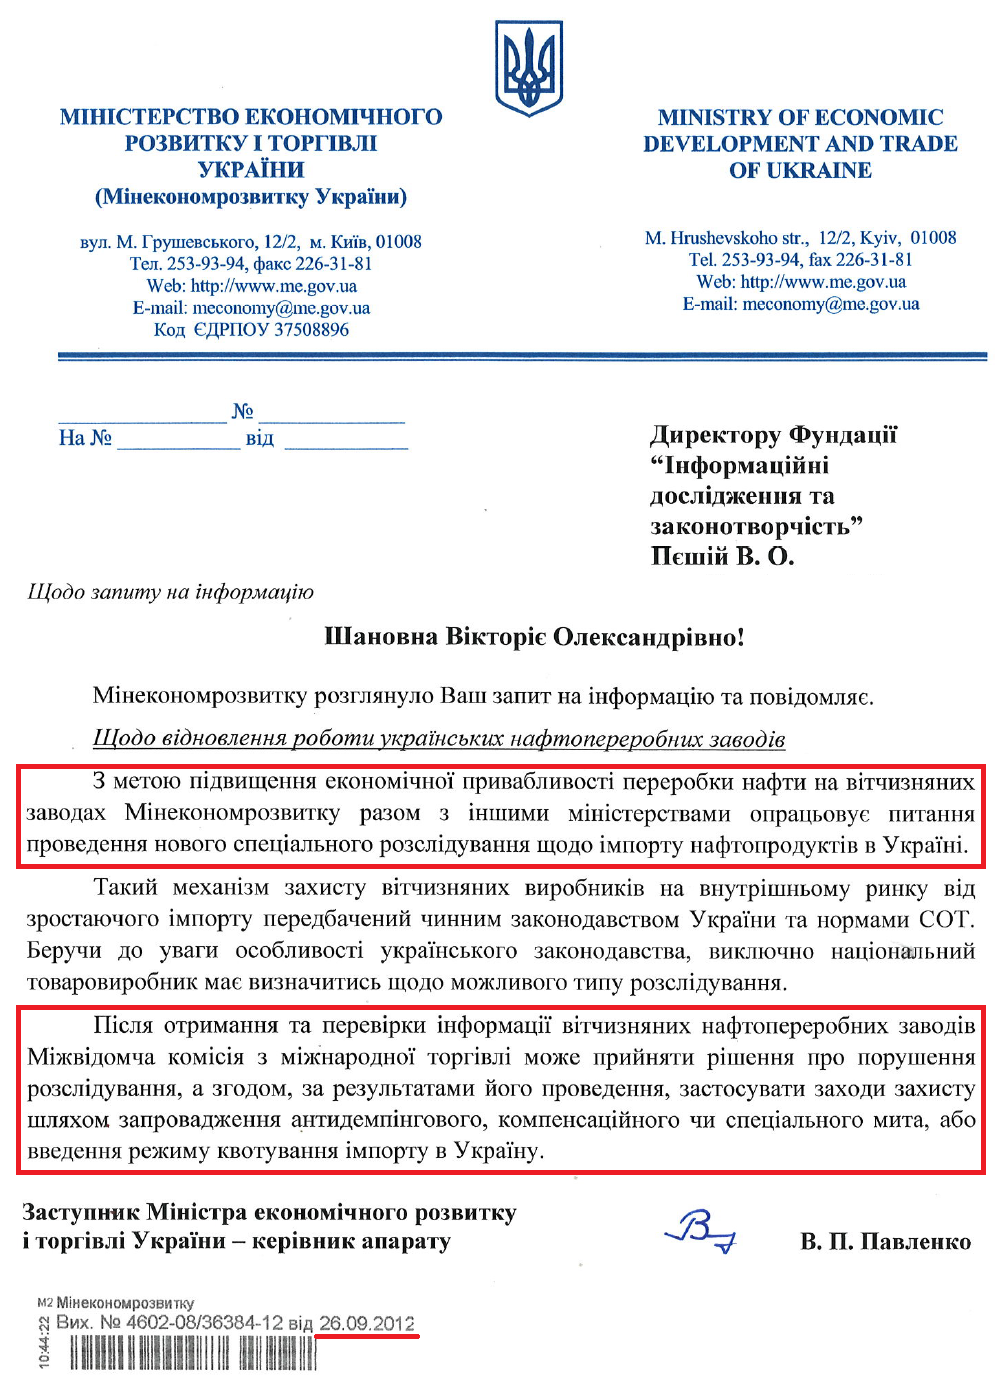 Лист Заступника міністра економічного розвитку і торгівлі України В.П.Павленка від 26 вересня 2012 року